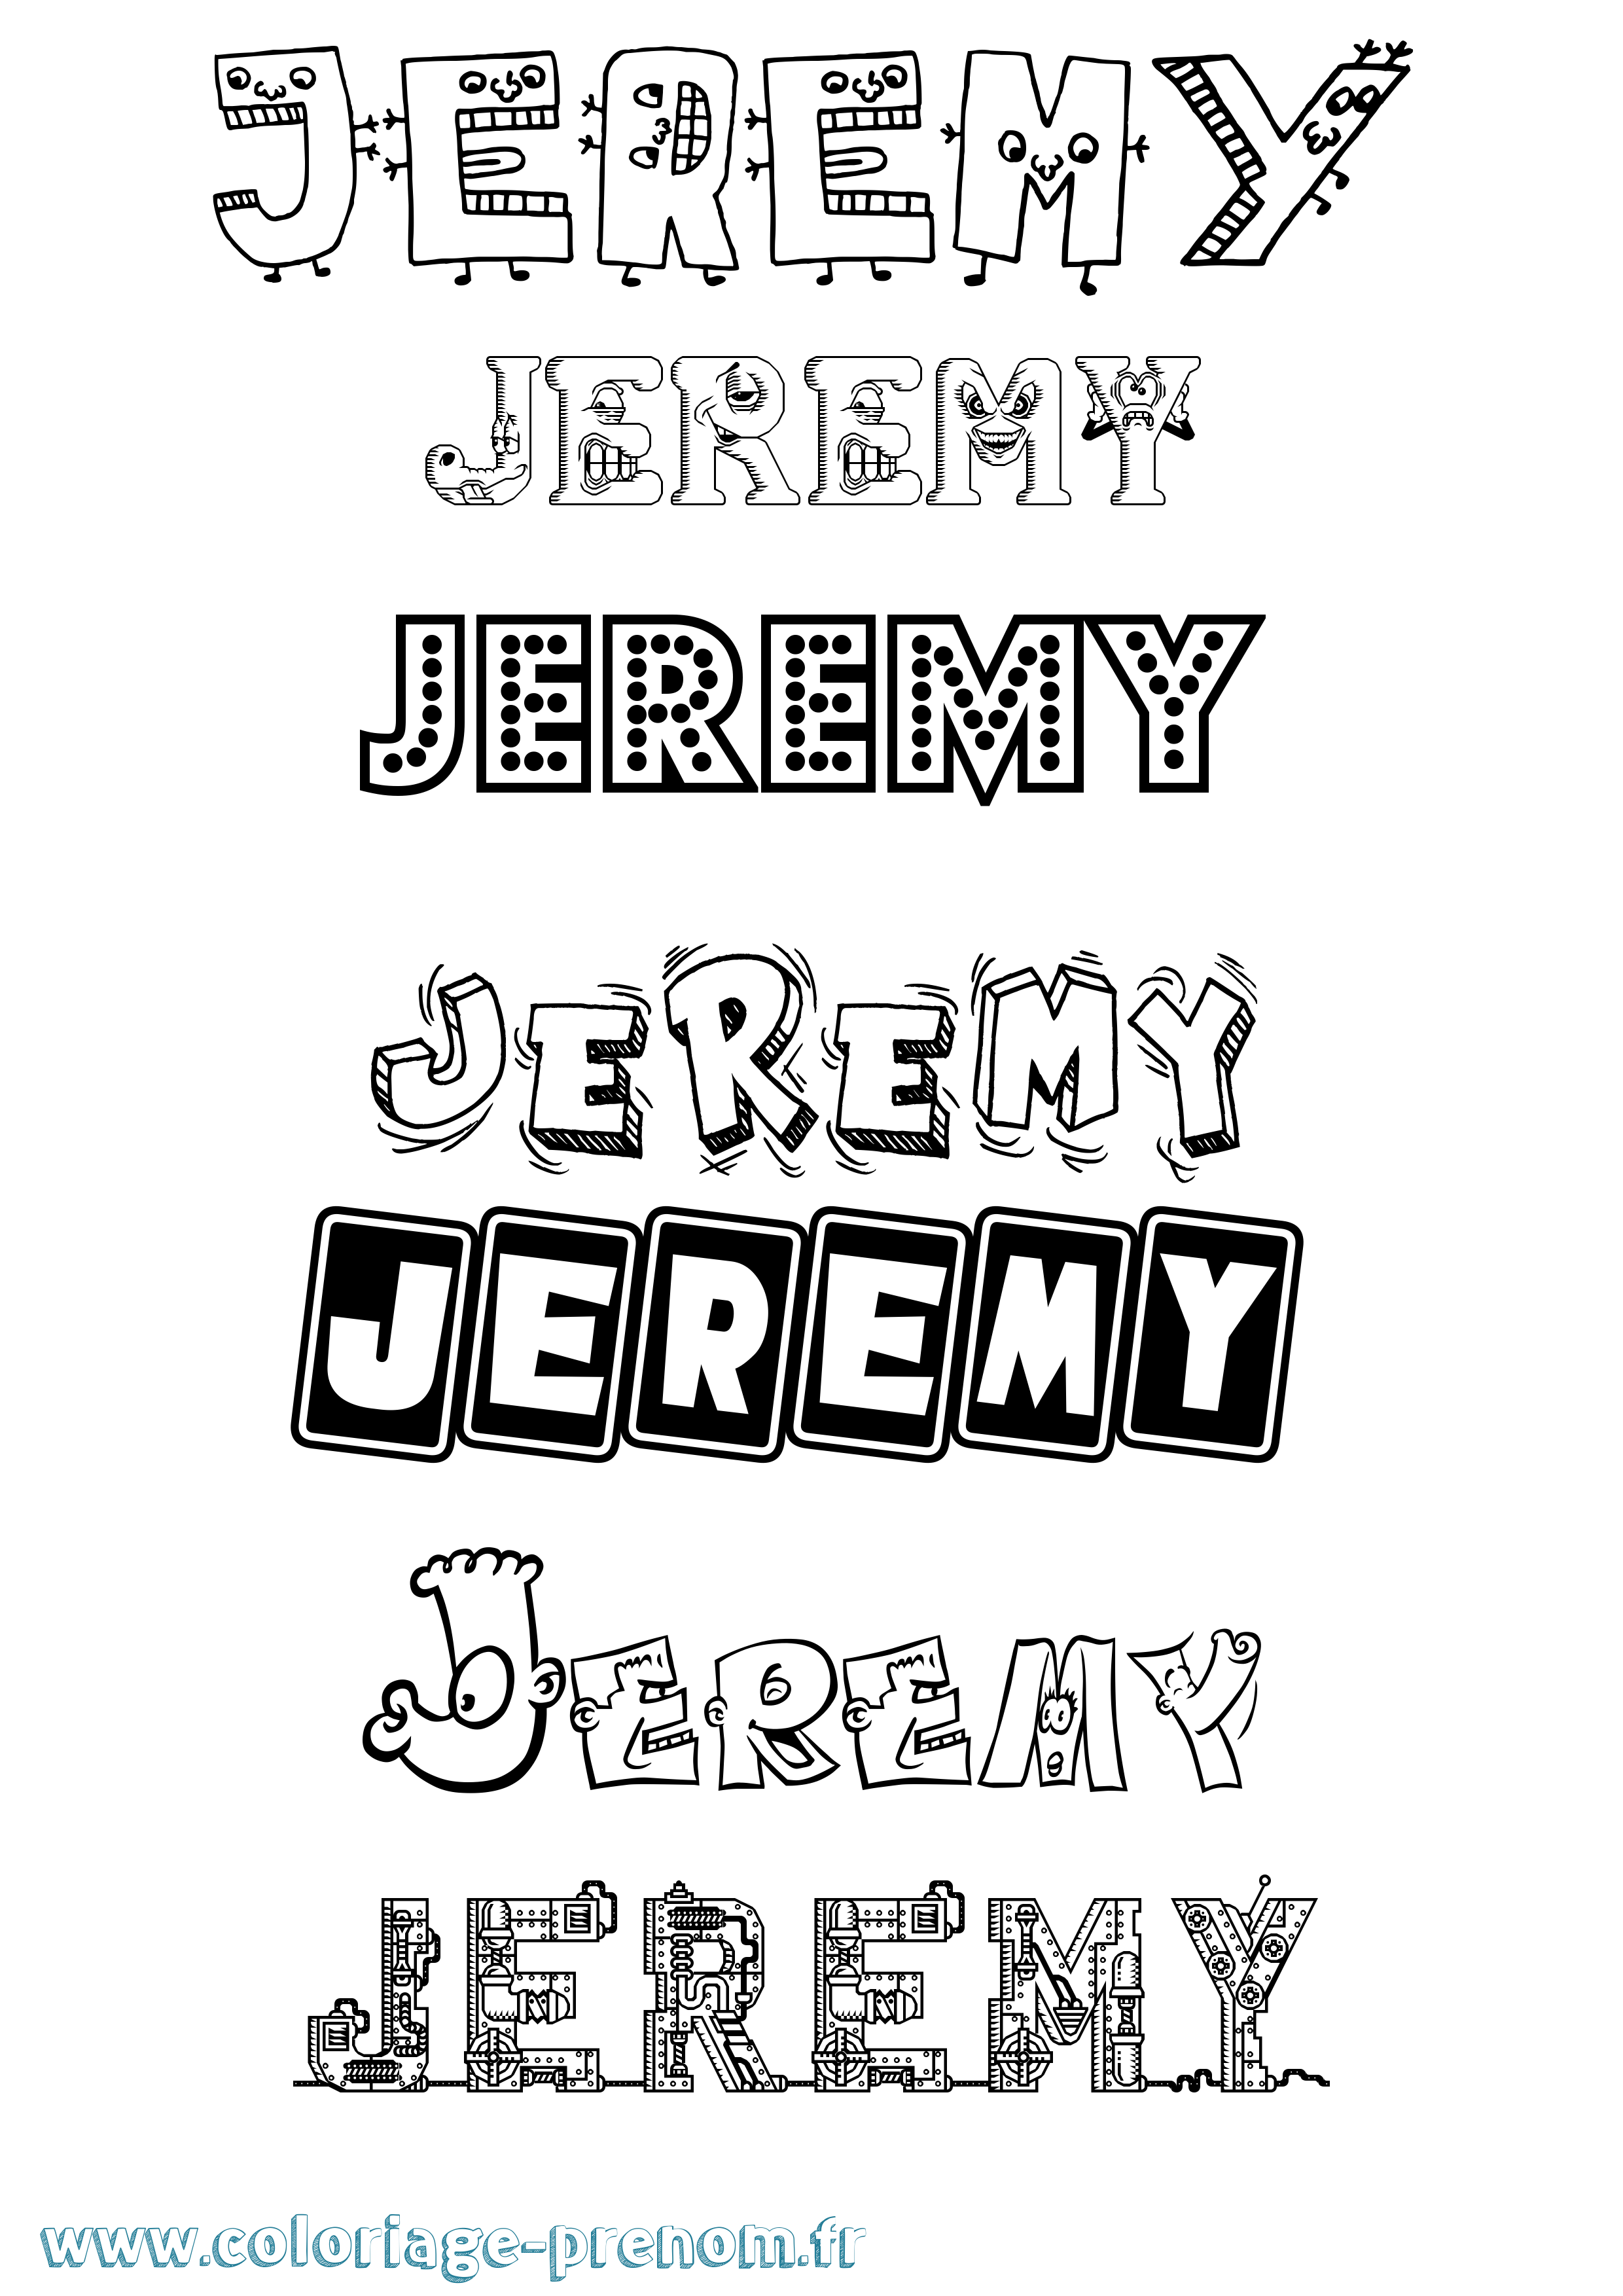 Coloriage prénom Jeremy Fun